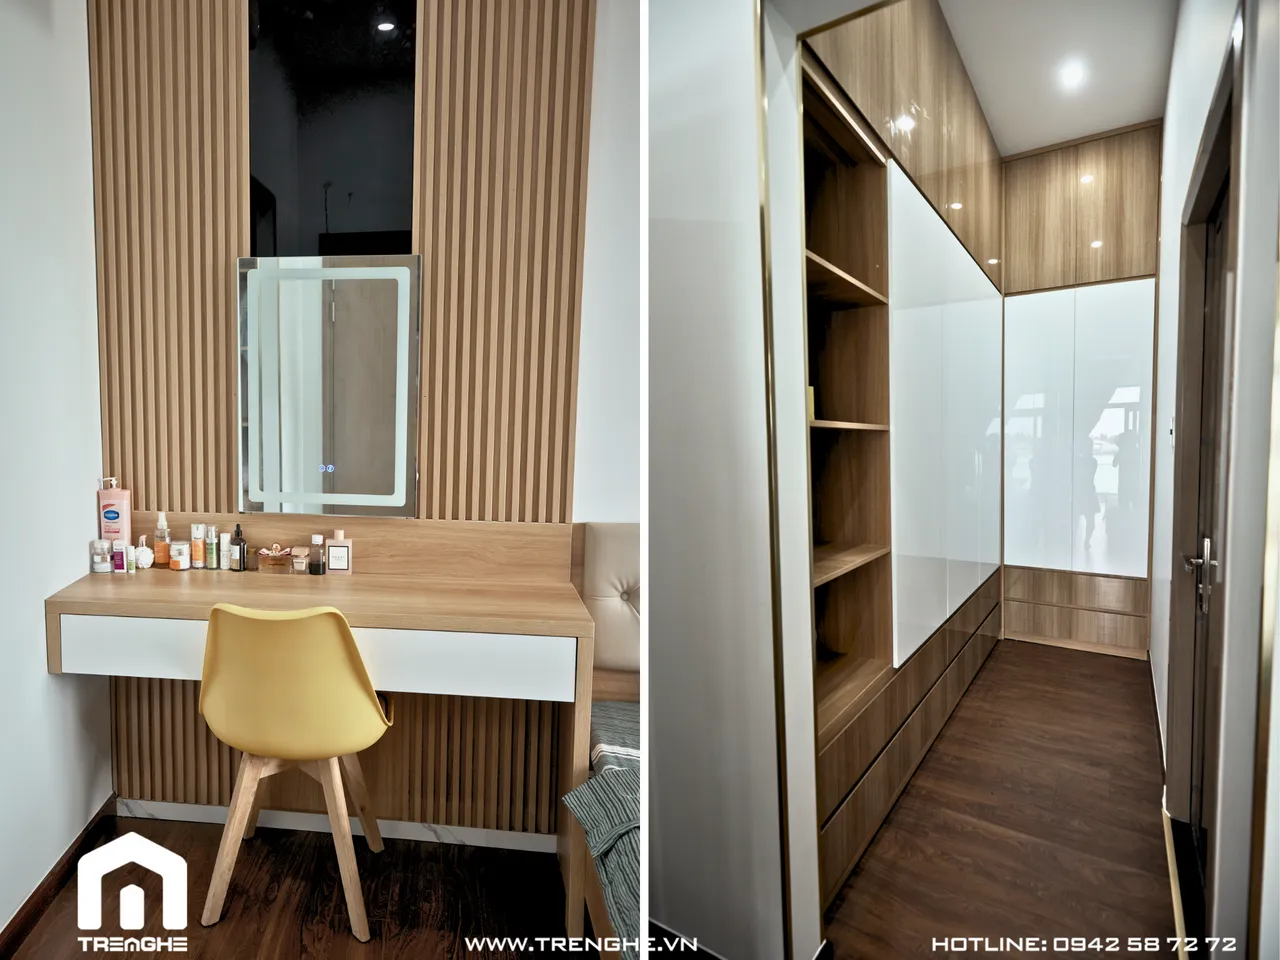  Phòng ngủ - Biệt thự Hòa Long 302m2 - Phong cách Modern 